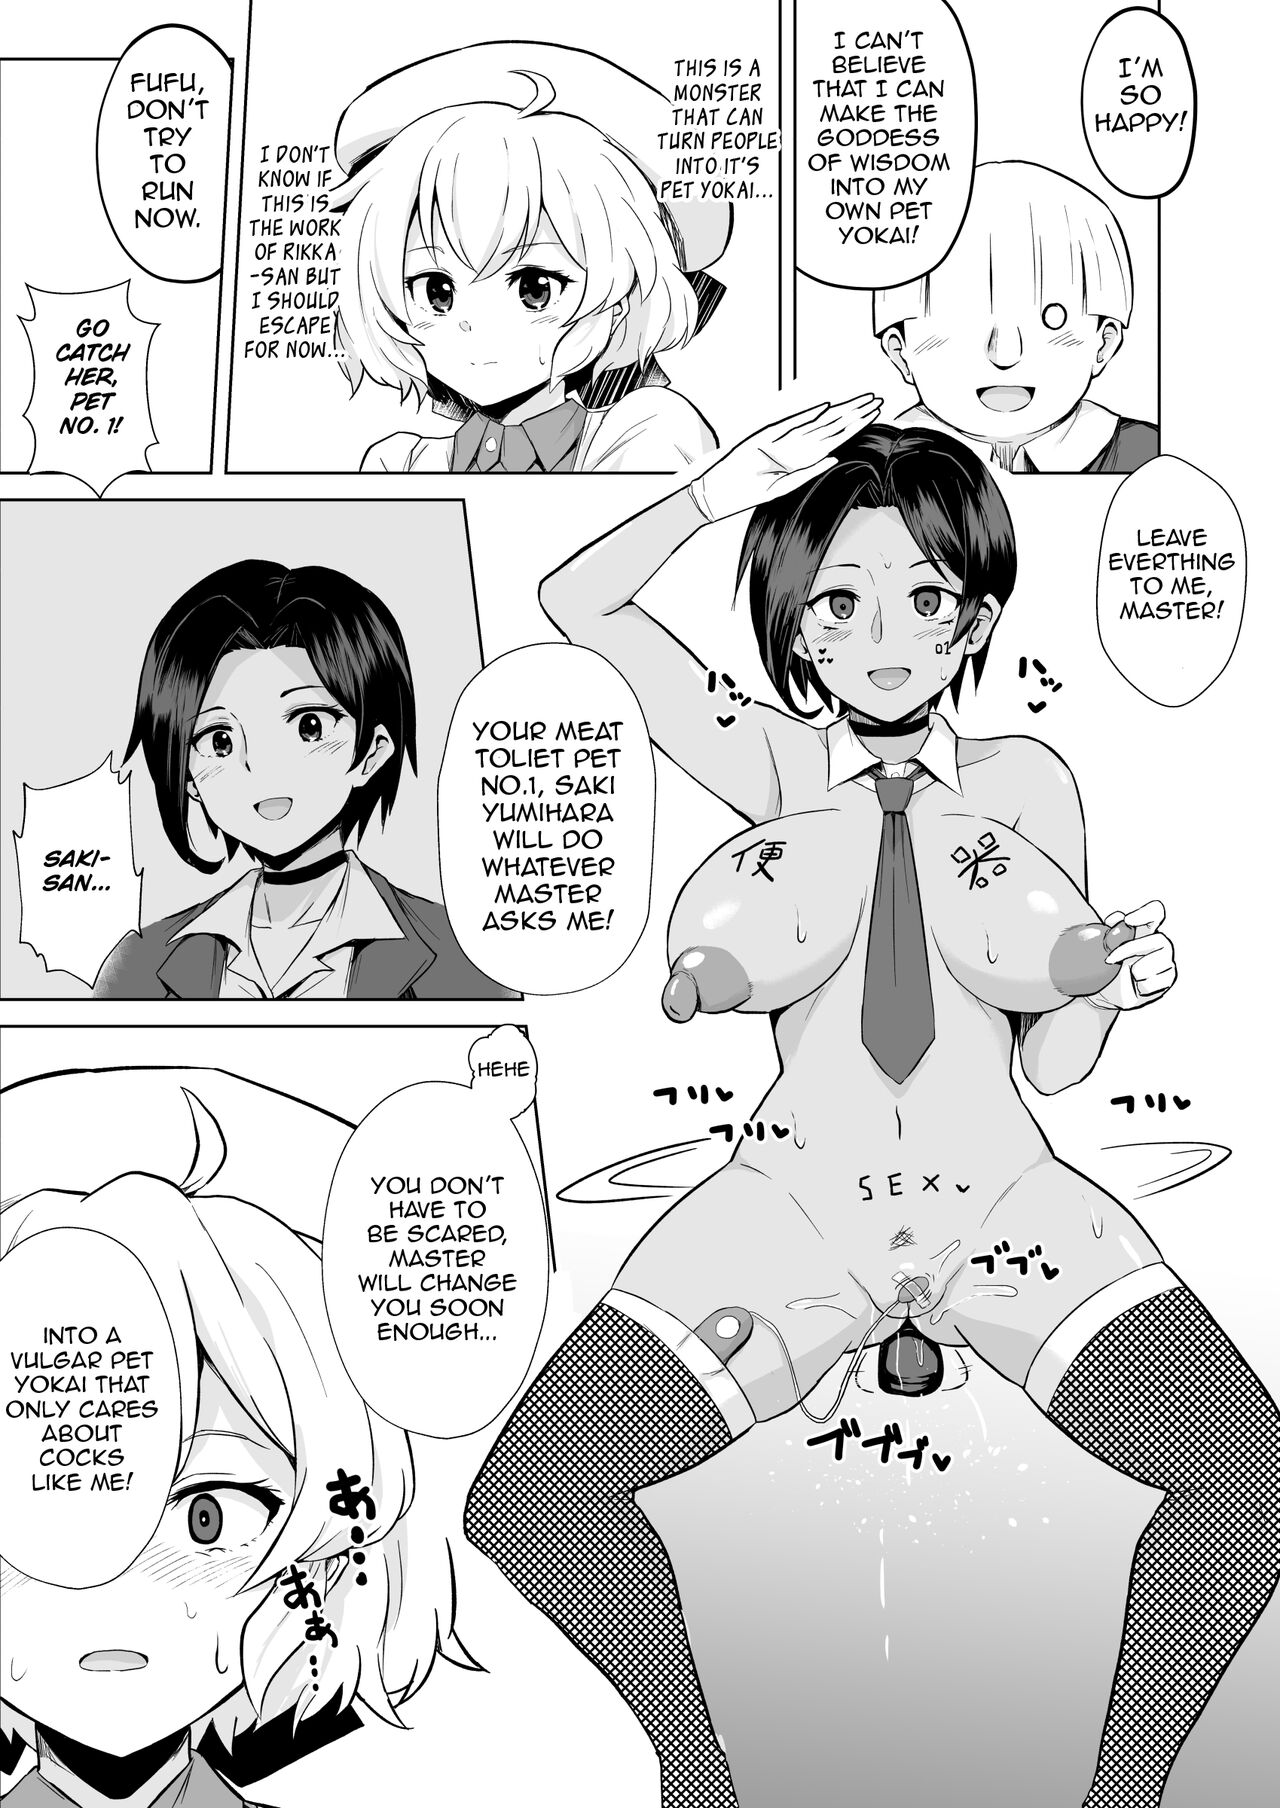 Kyokou Suiri 2-page Manga | InSpectre 2-Page Manga - Page 2 - HentaiEra